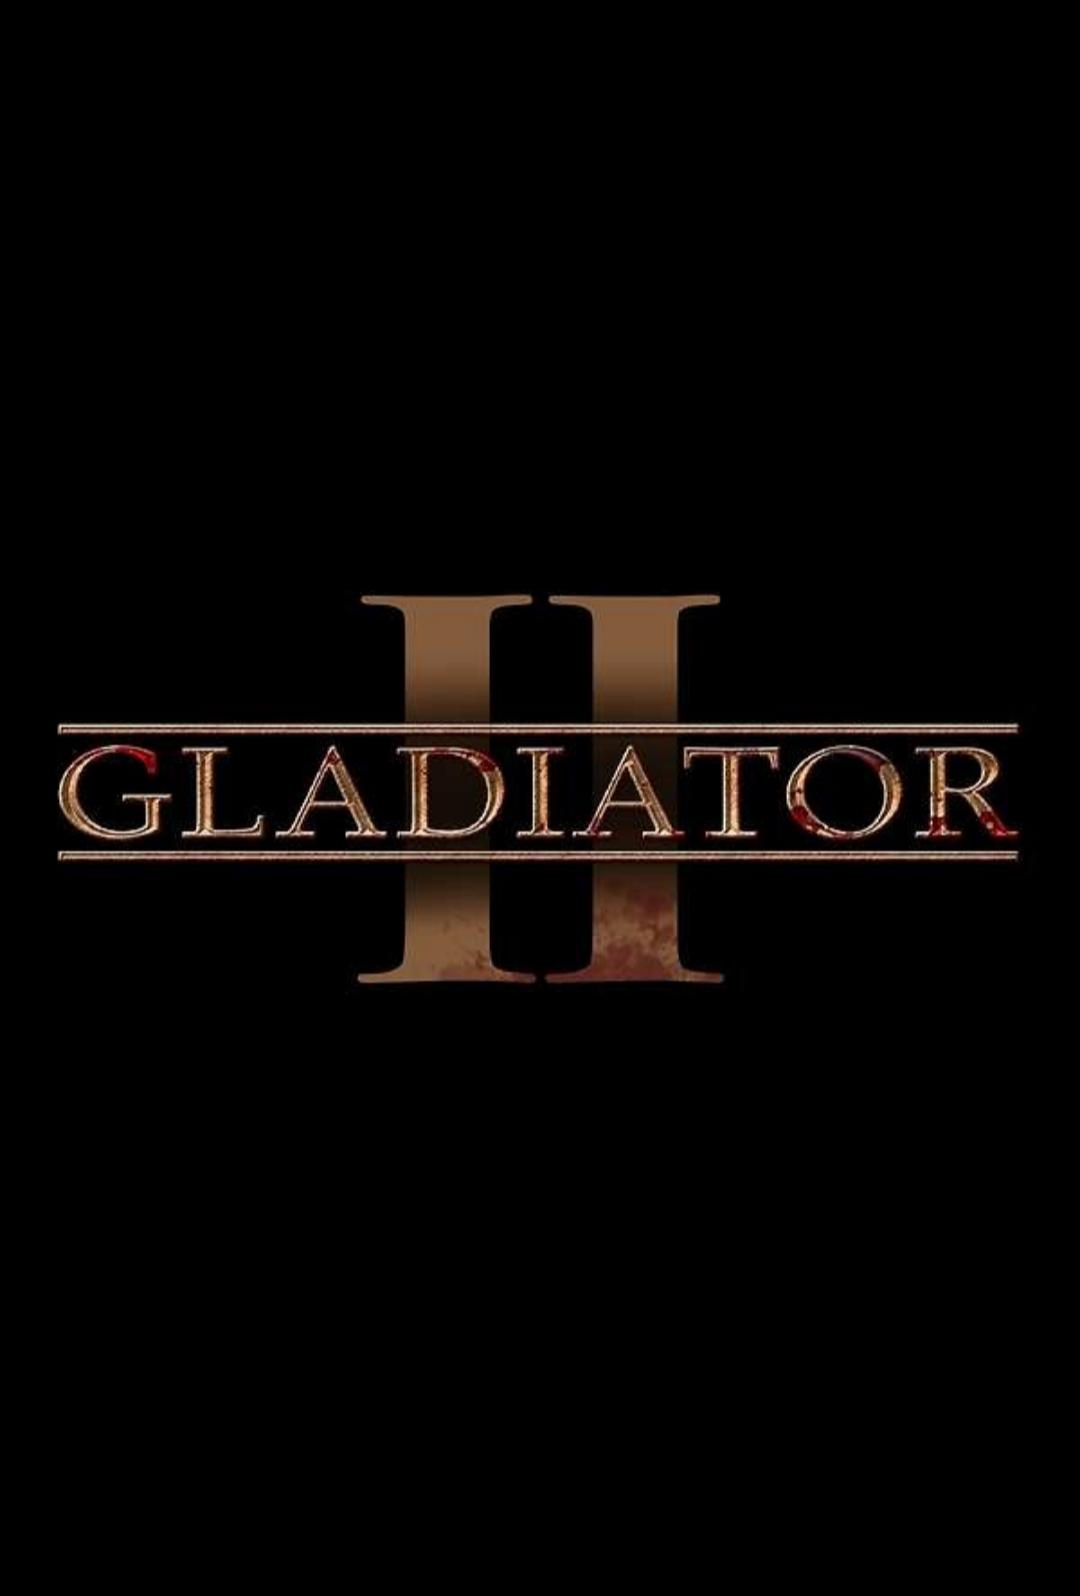 دانلود فیلم گلادیاتور 2 – Gladiator 2